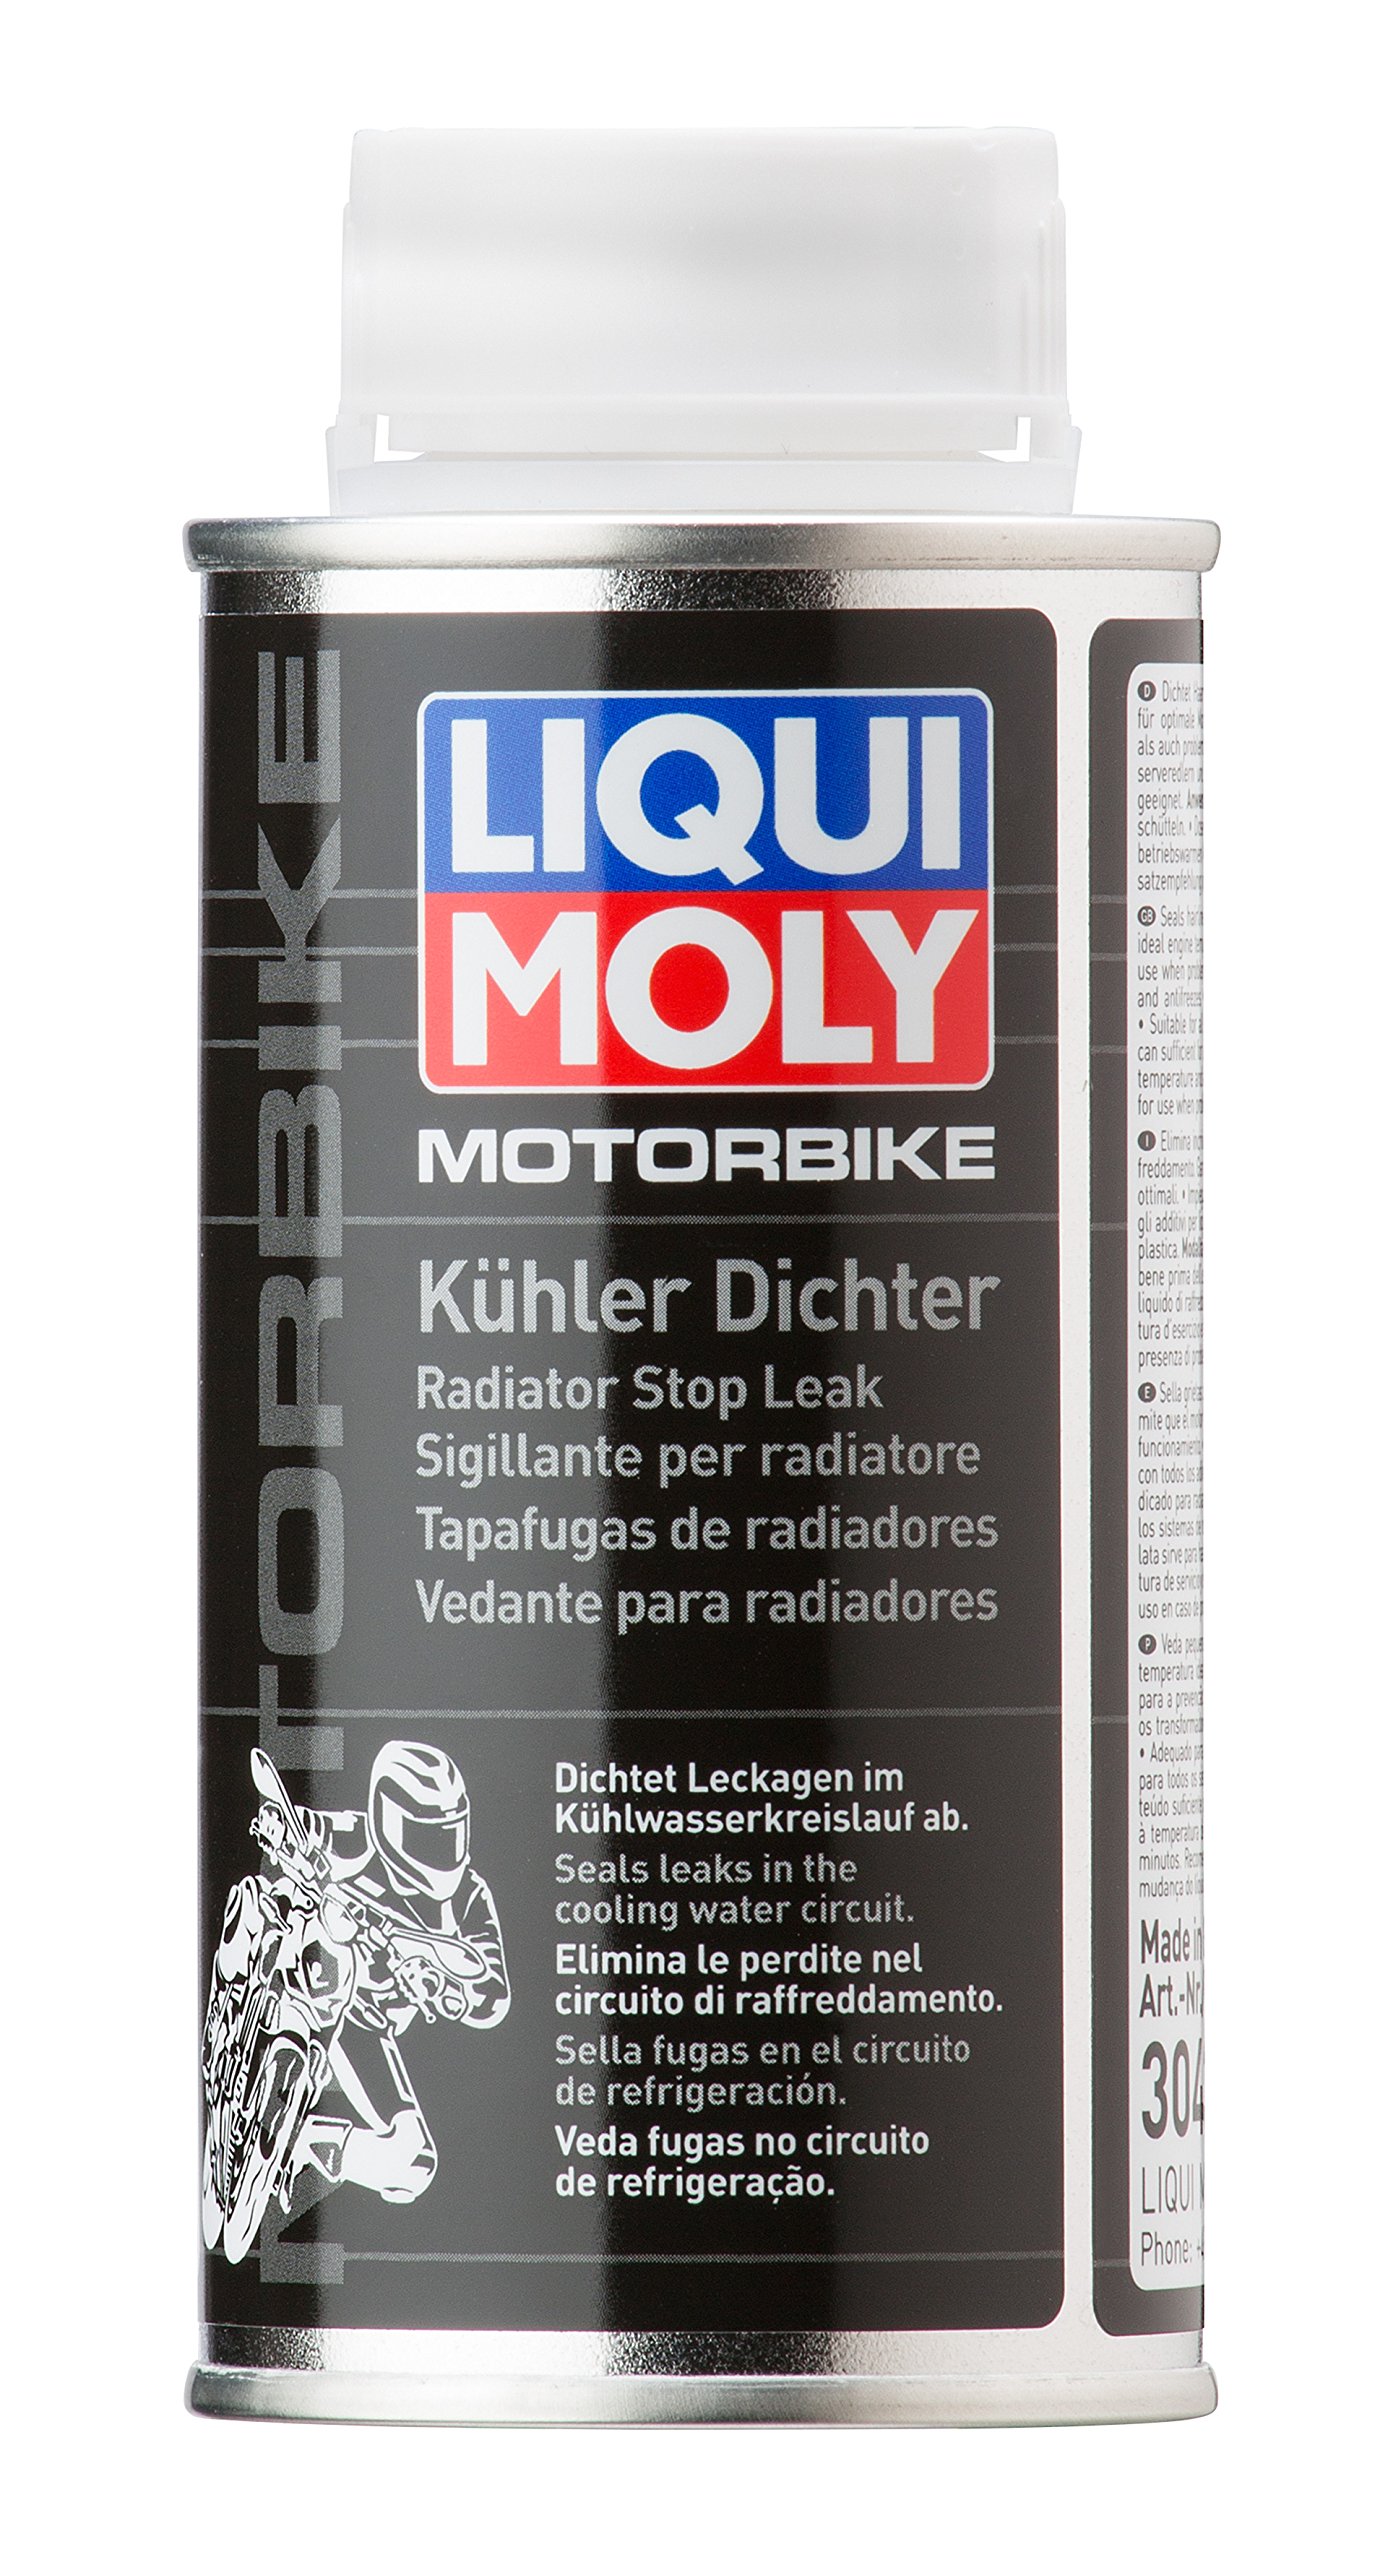 LIQUI MOLY Motorbike Kühlerdichter | 125 ml | Motorrad Kühleradditiv | Art.-Nr.: 3043 von Liqui Moly